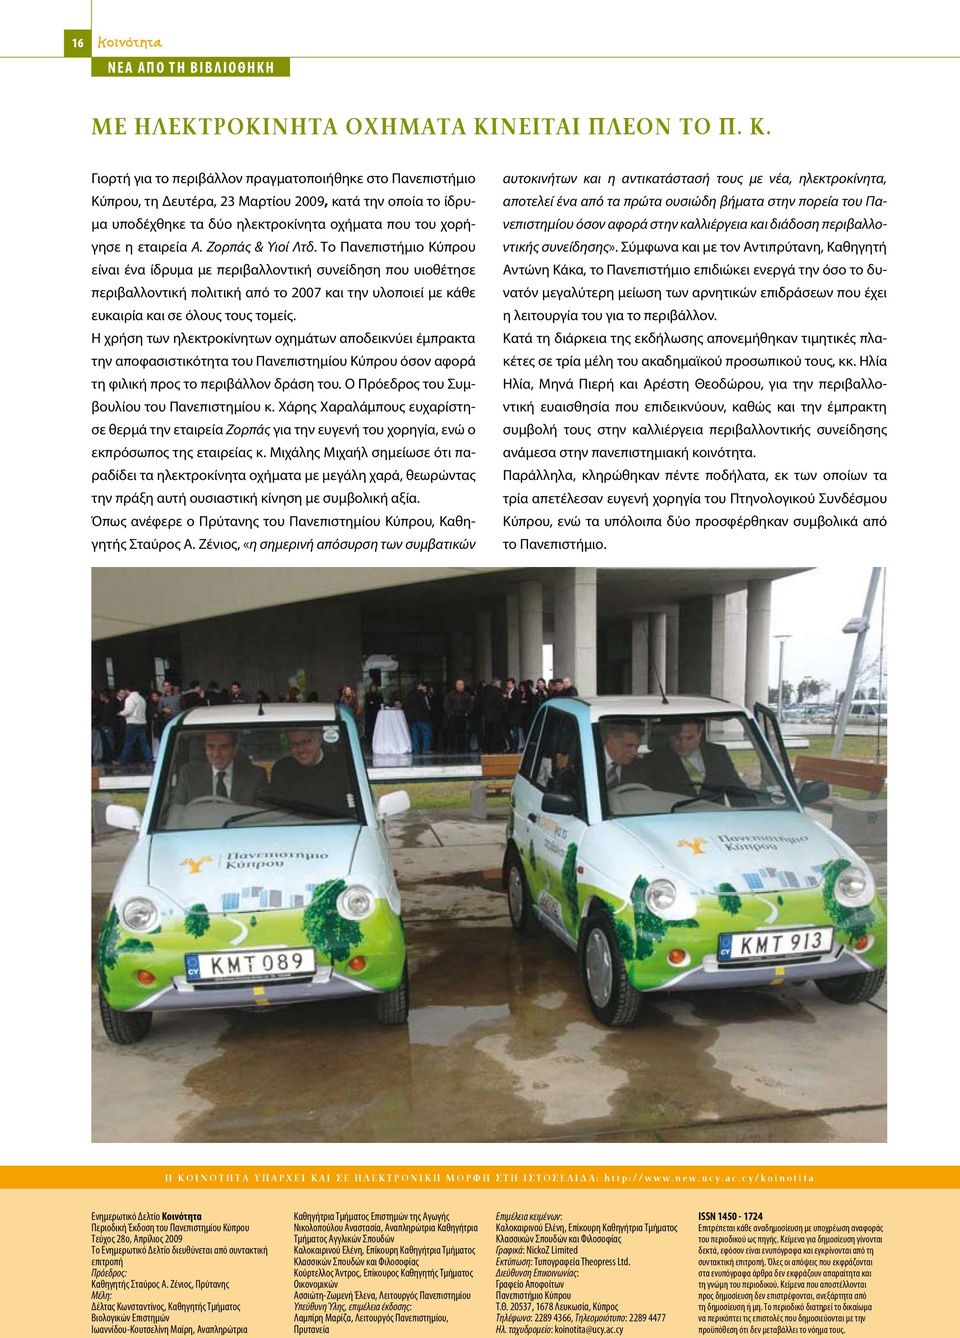 Γιορτή για το περιβάλλον πραγματοποιήθηκε στο Πανεπιστήμιο Κύπρου, τη Δευτέρα, 23 Μαρτίου 2009, κατά την οποία το ίδρυμα υποδέχθηκε τα δύο ηλεκτροκίνητα οχήματα που του χορήγησε η εταιρεία Α.